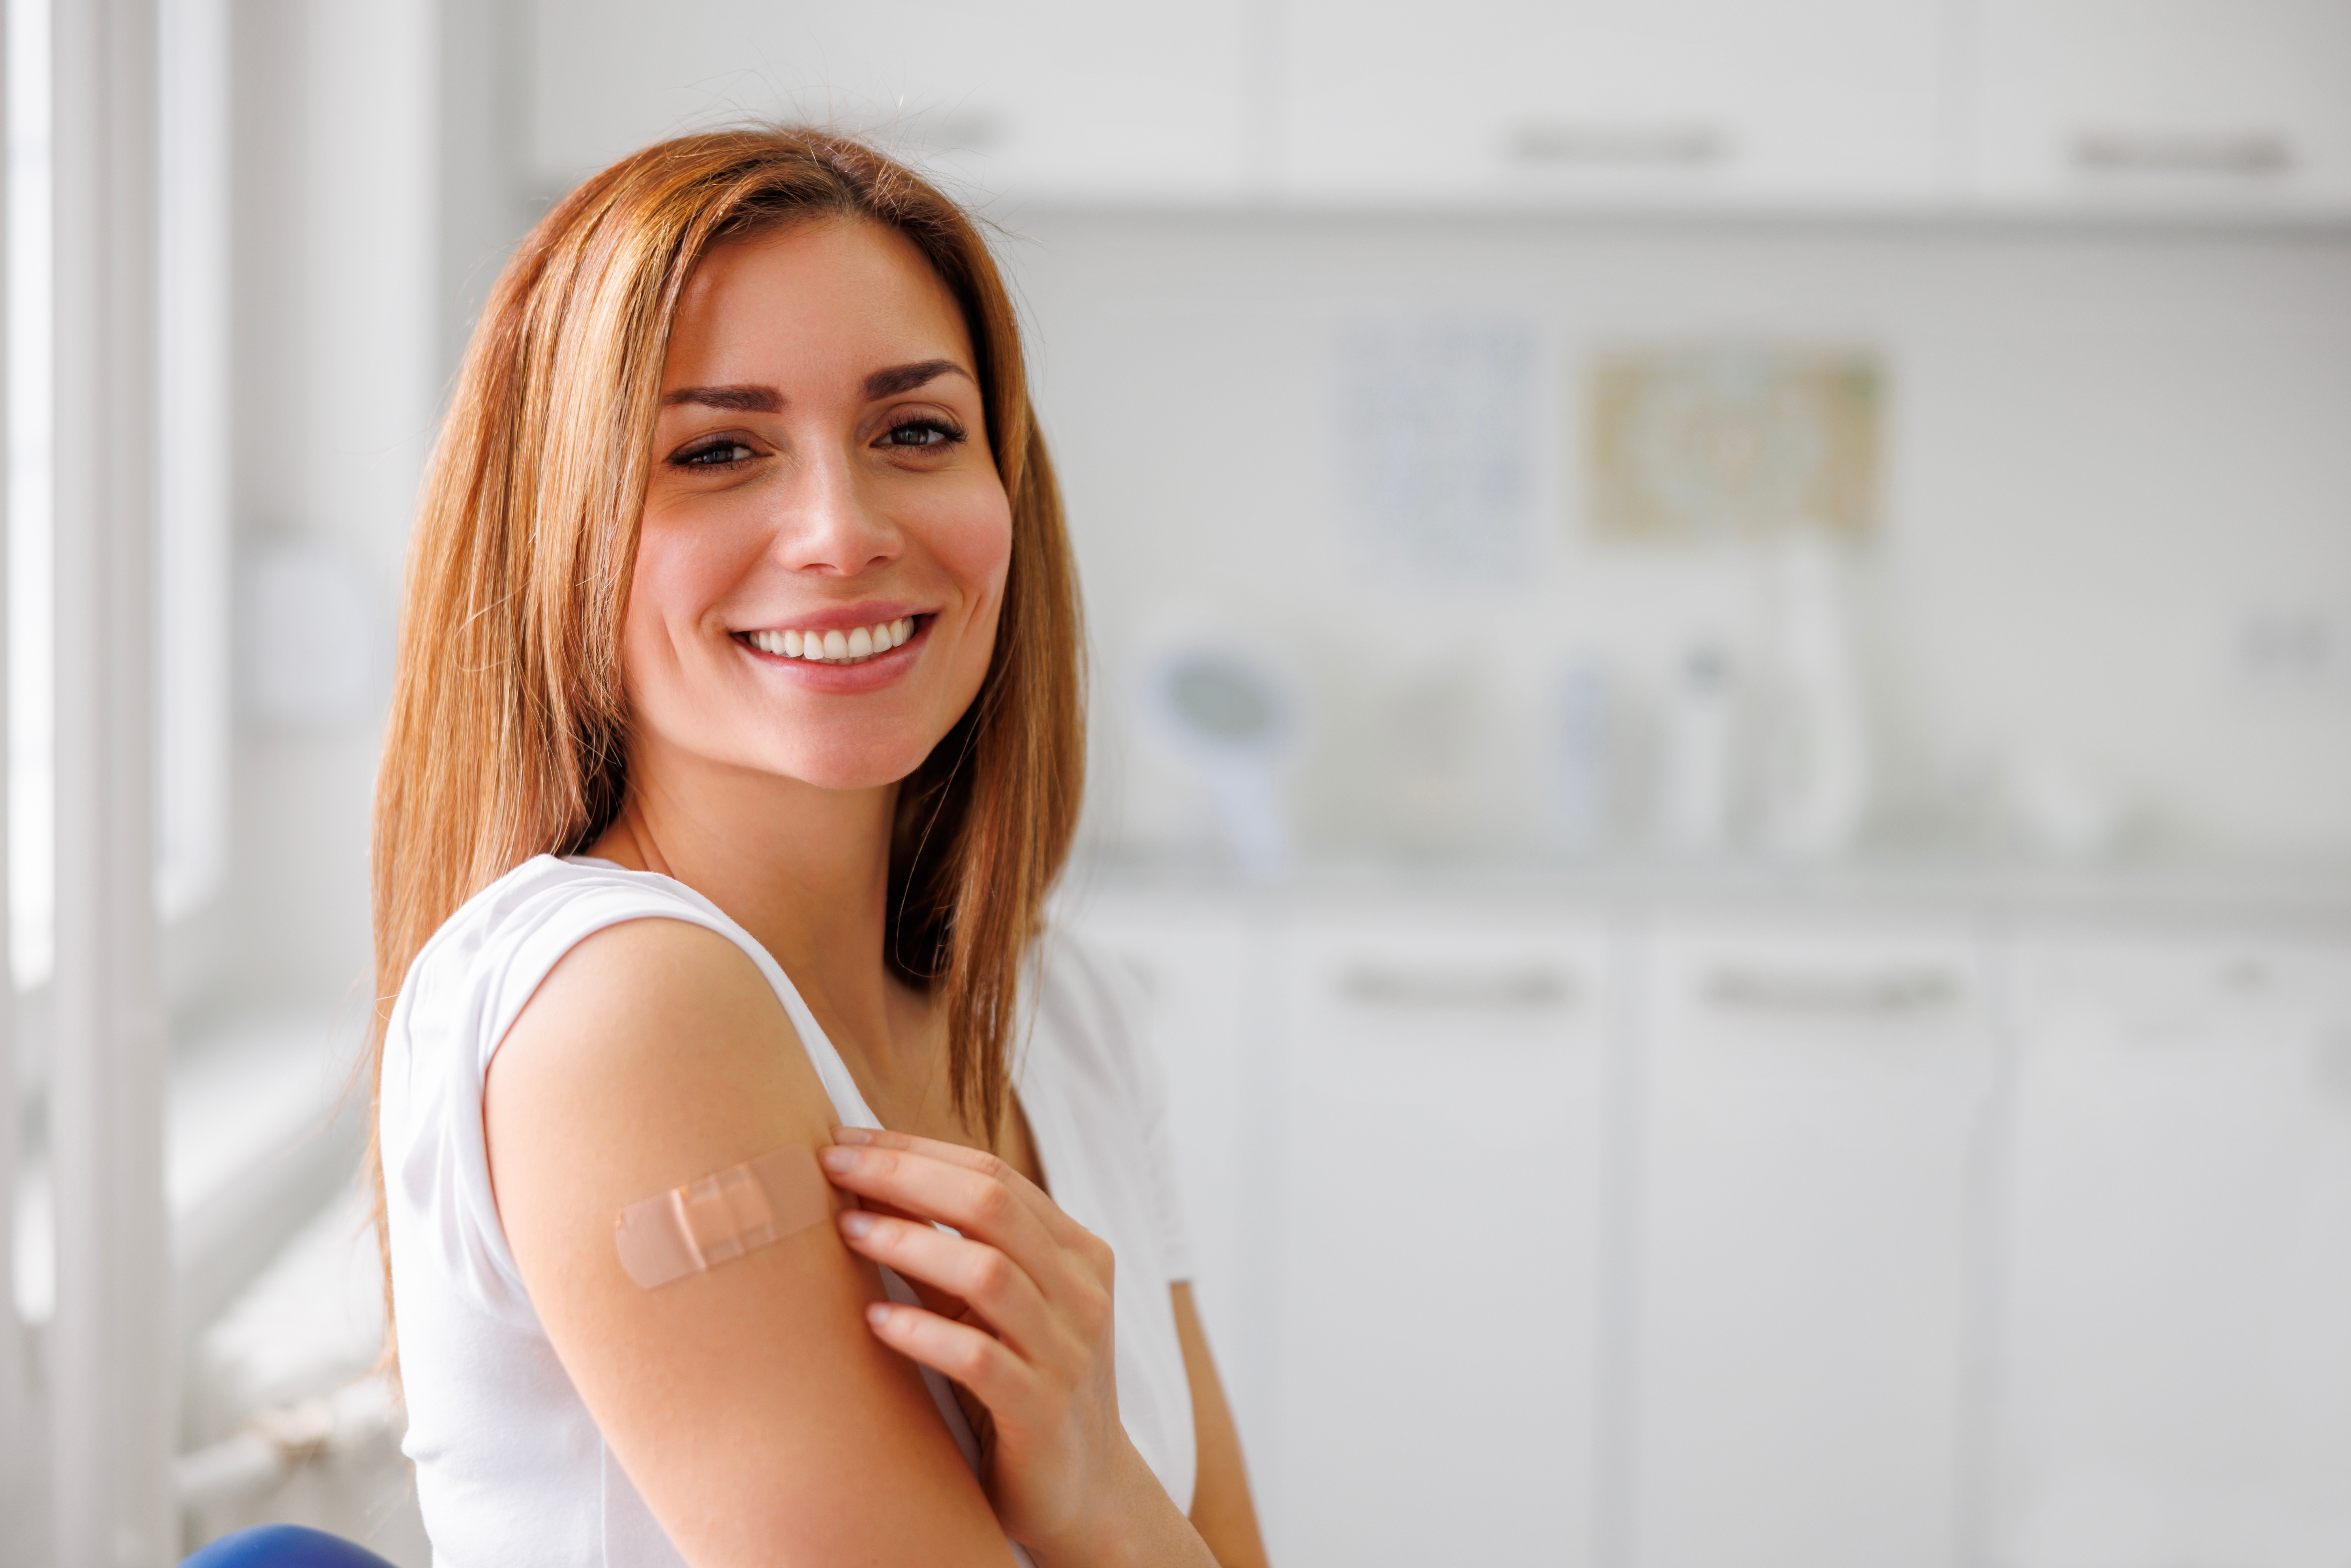 Vacuna contra el VPH: ¿conoces las últimas recomendaciones?